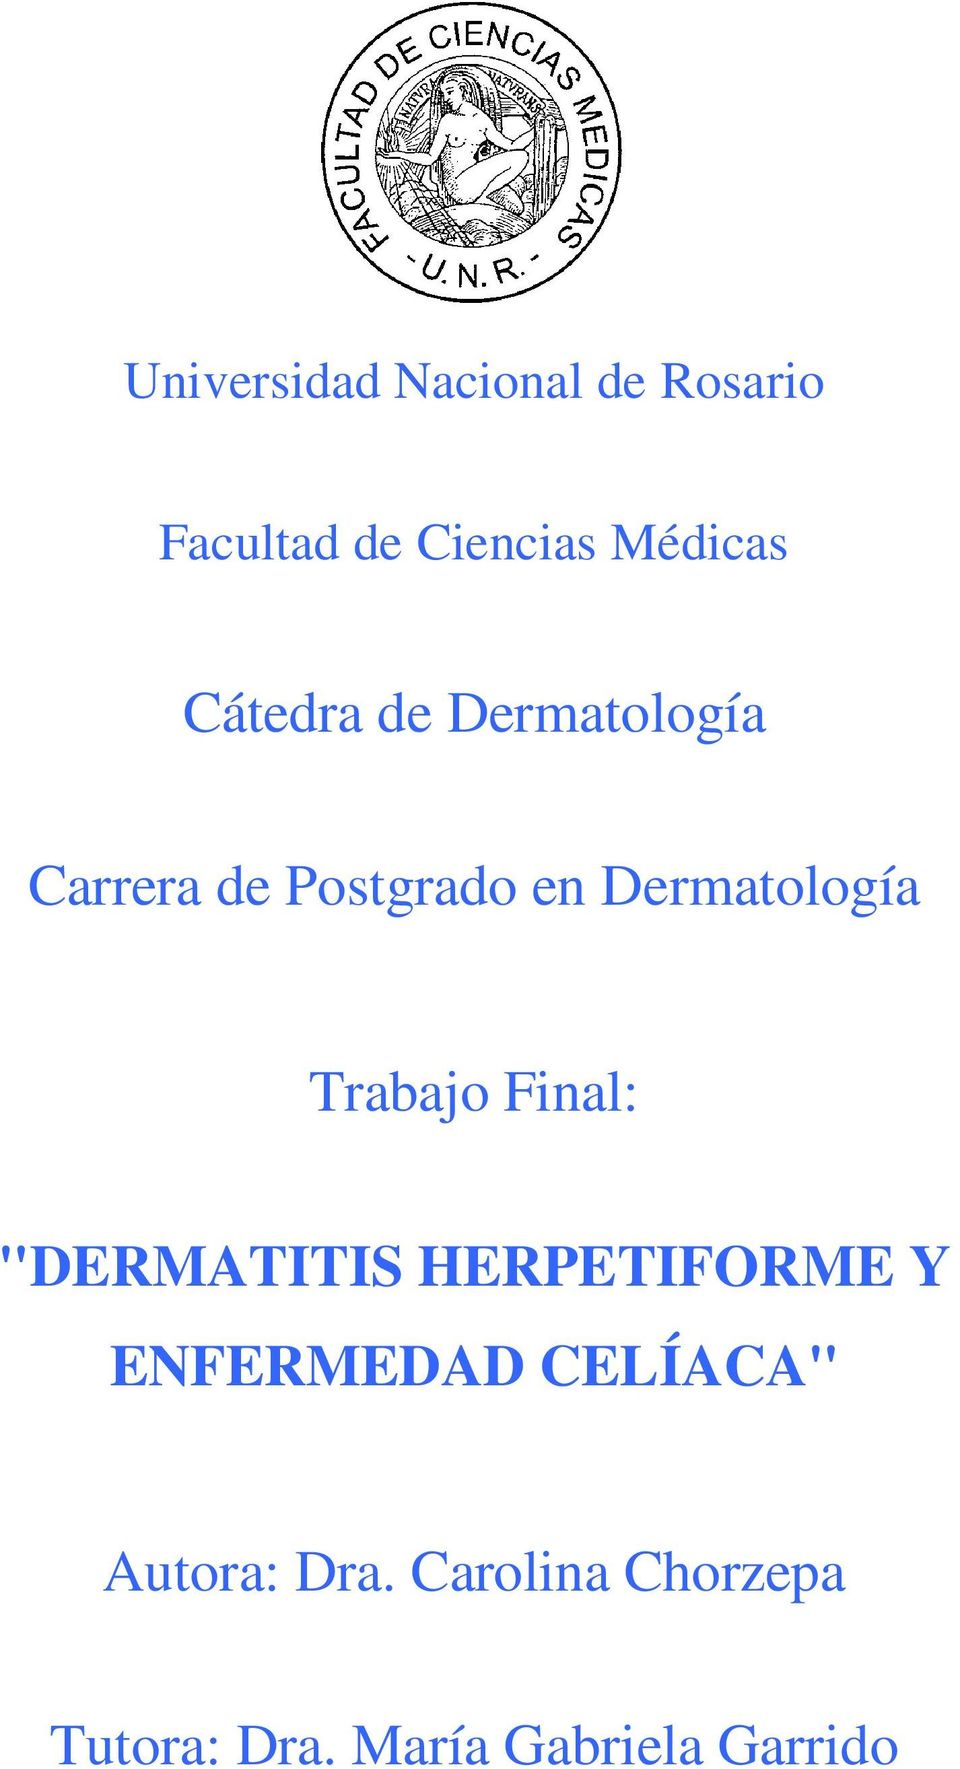 Dermatología Trabajo Final: "DERMATITIS HERPETIFORME Y